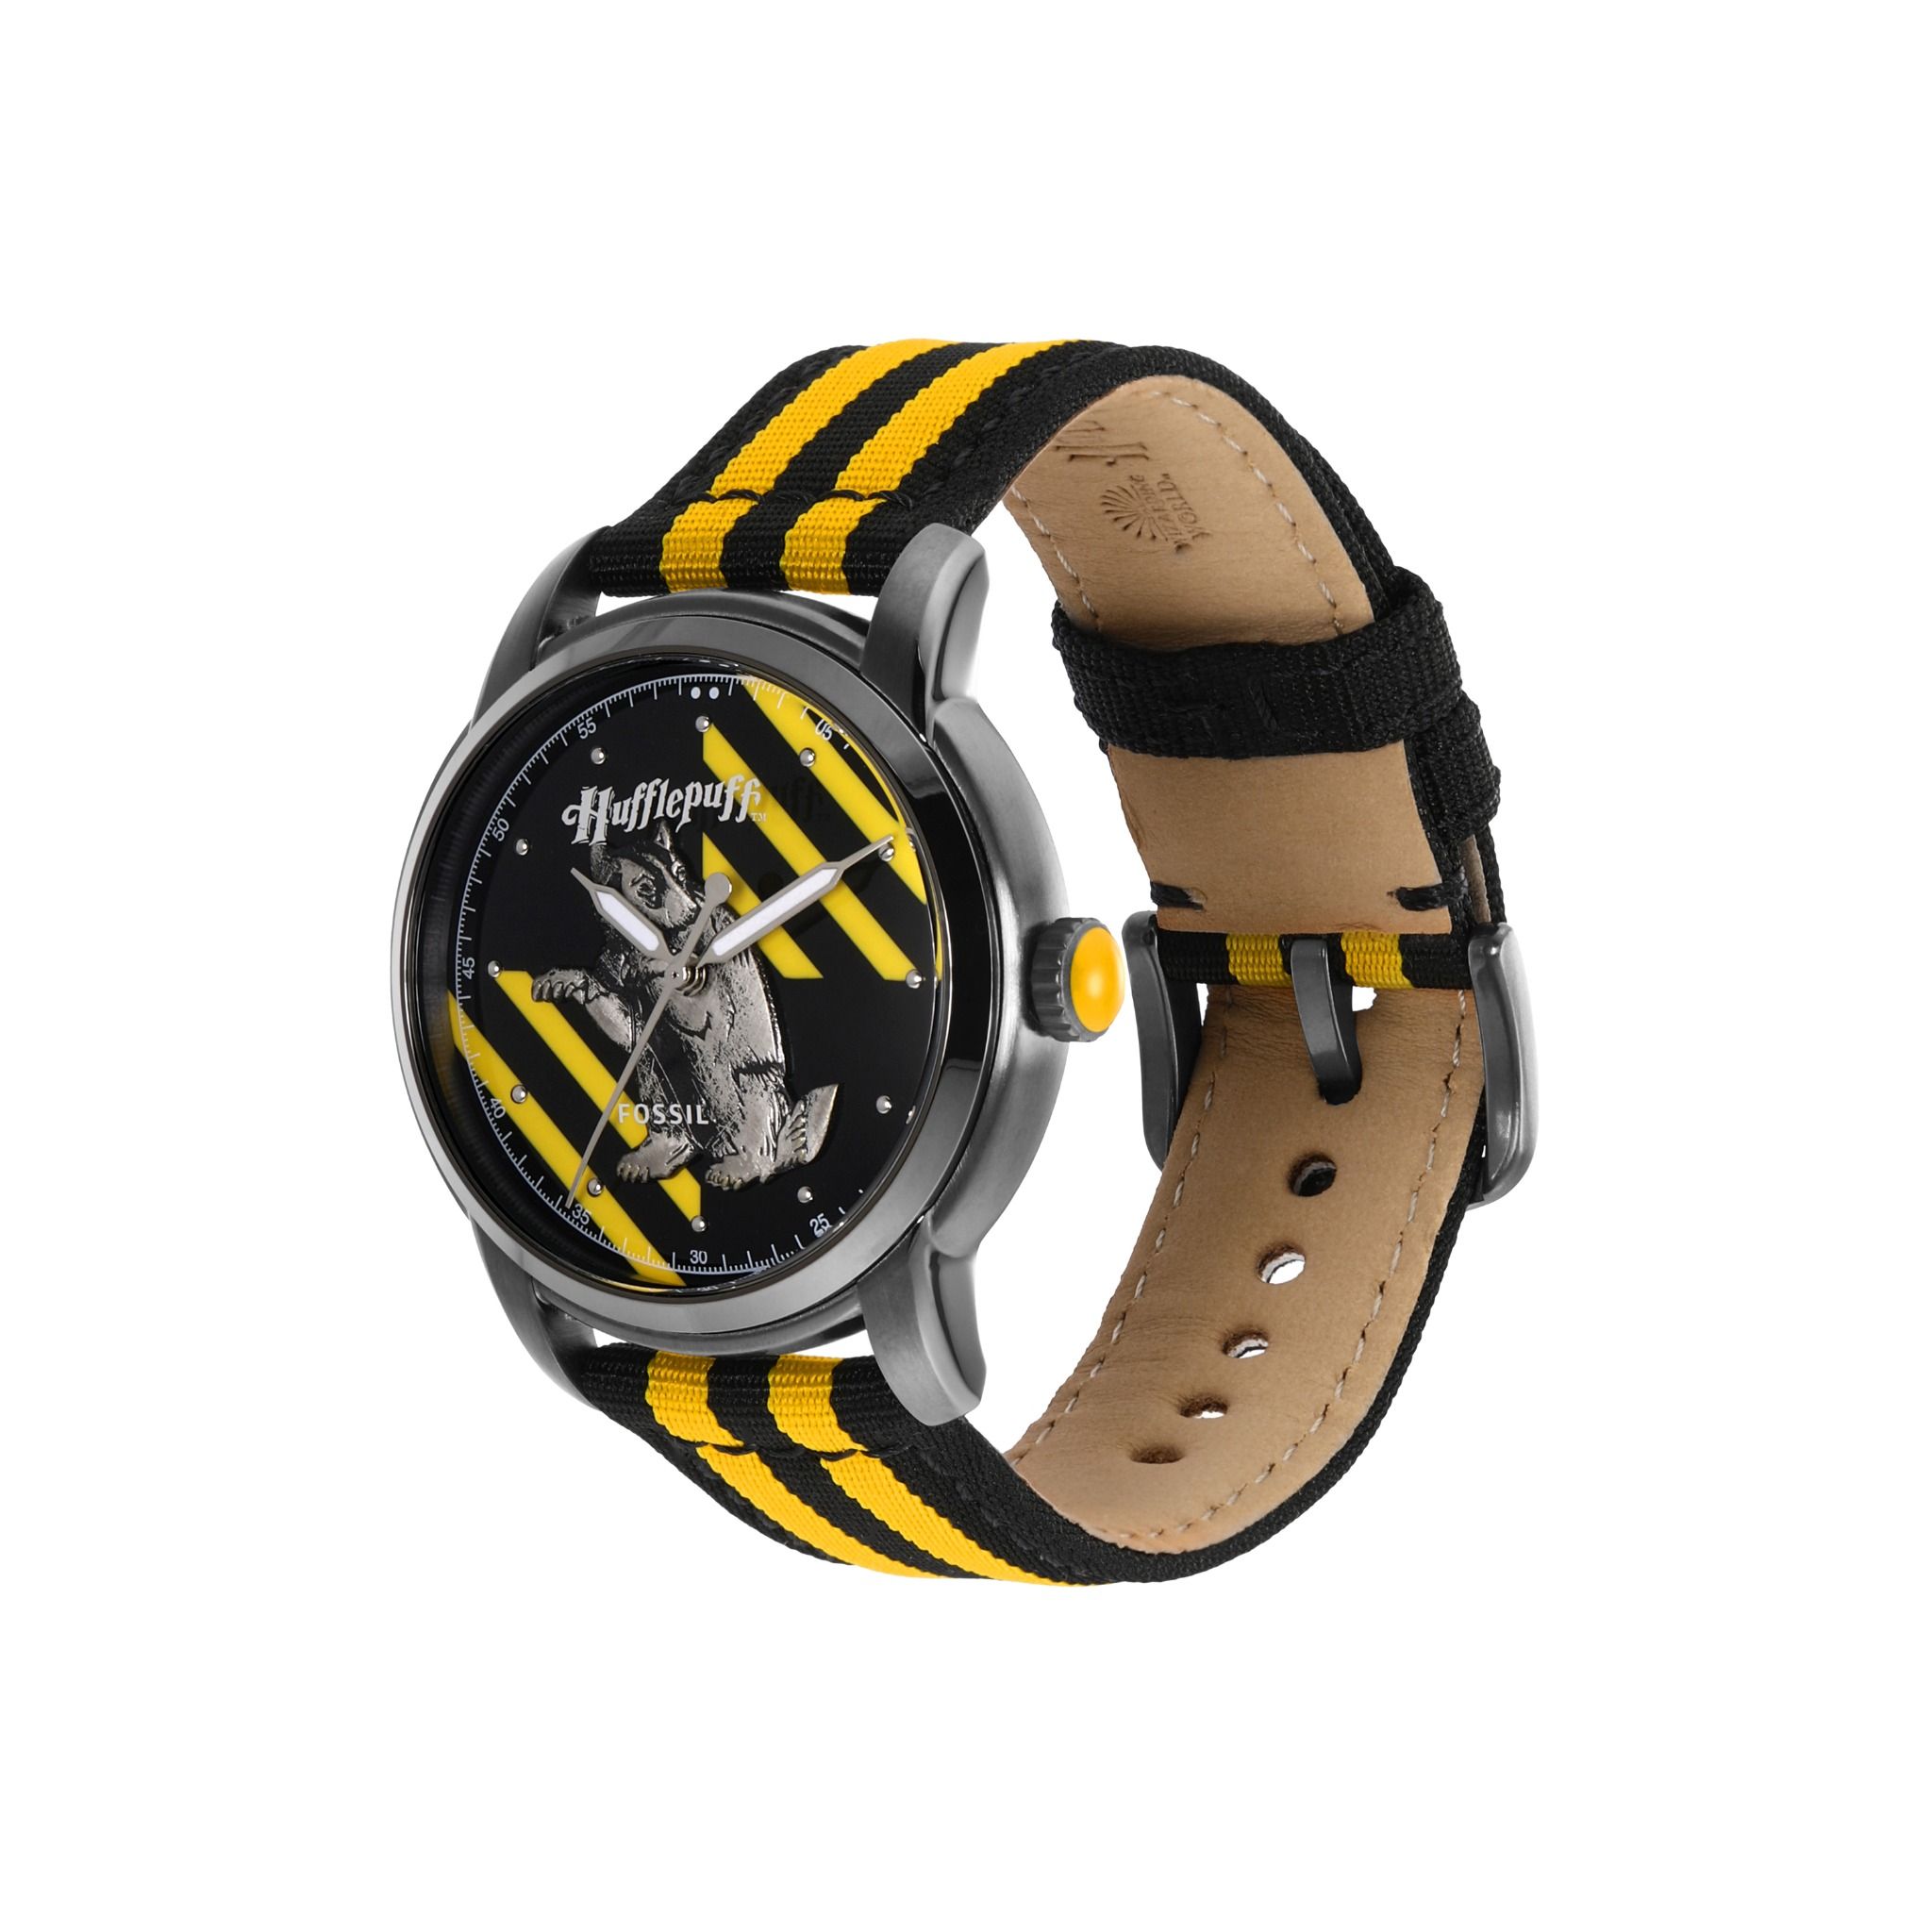  Đồng hồ nam Fossil Heritage HP dây canvas LE1159 - màu vàng 